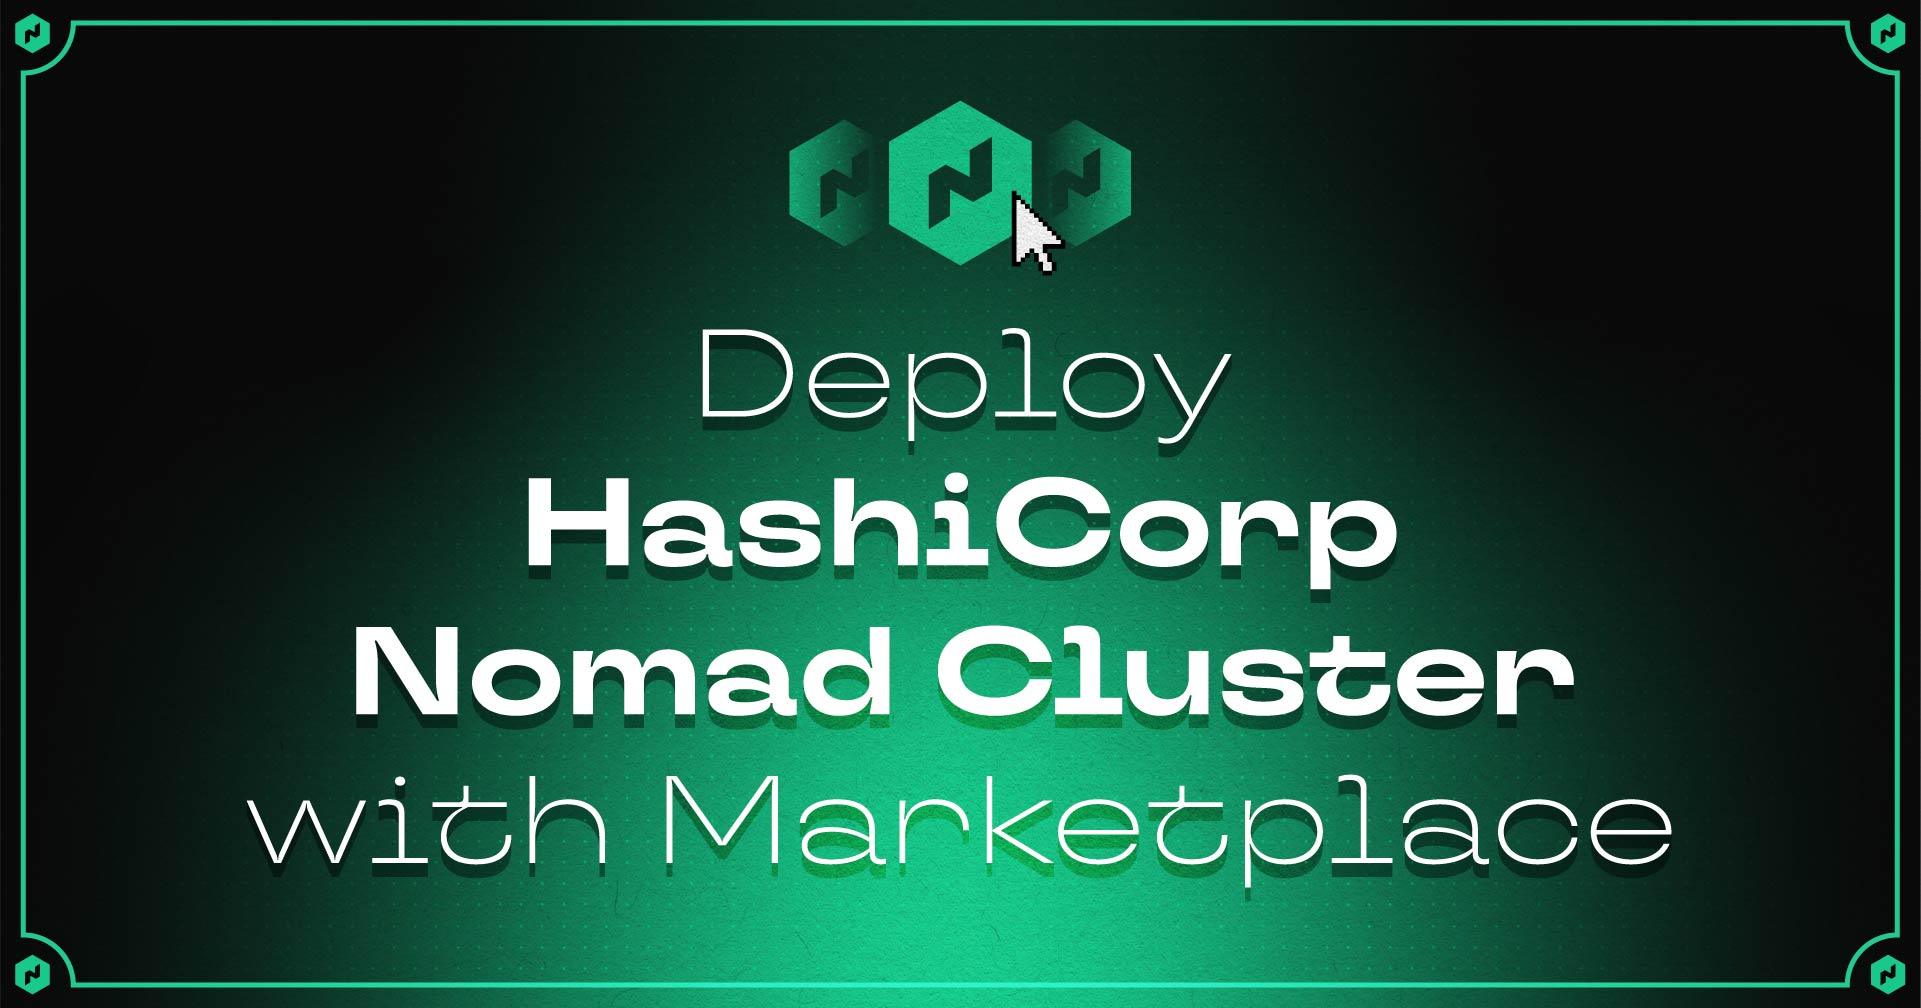 マーケットプレイスでHashiCorp Nomad Clusterを展開します！